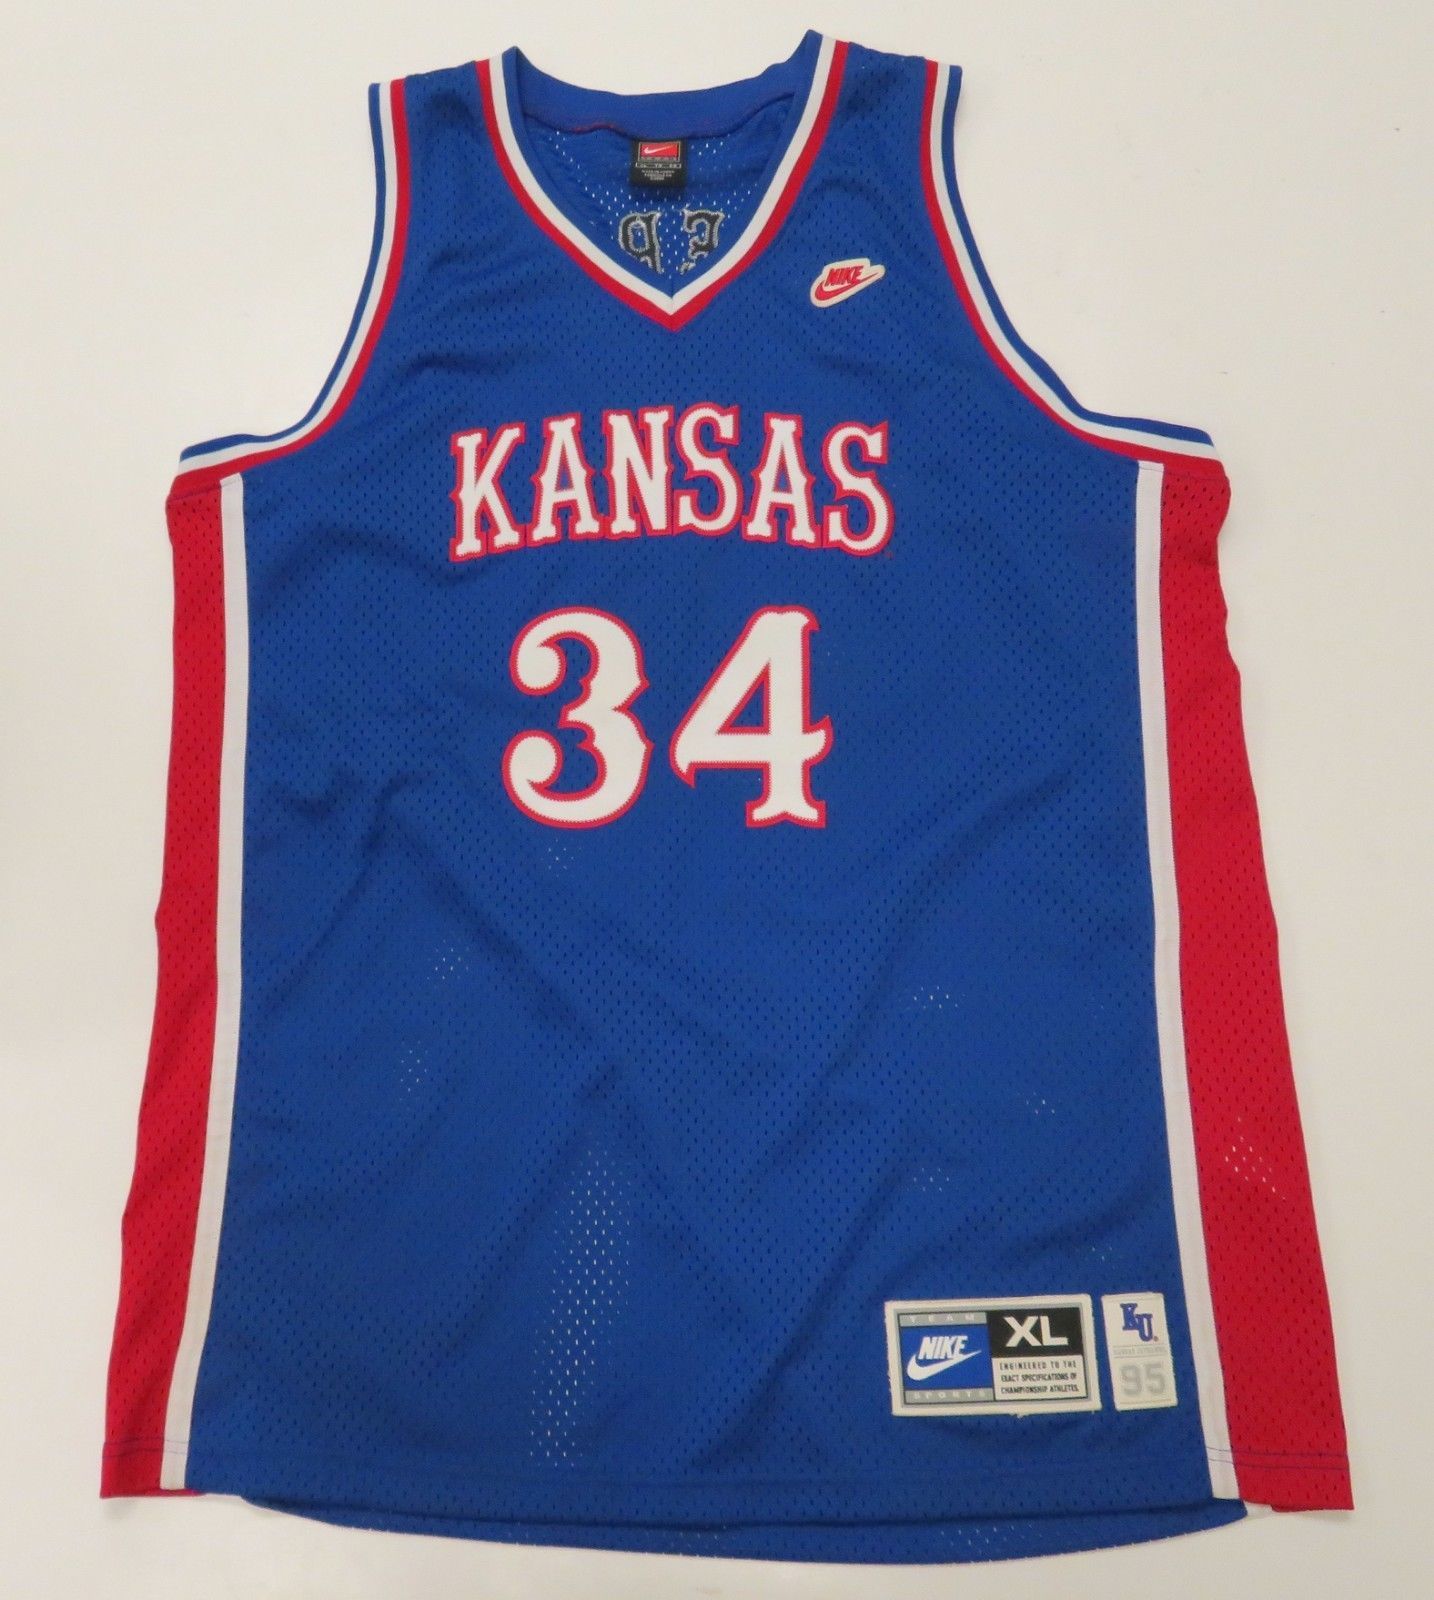 Nike VTG Basketball Jersey Kansas Jayhawks 34 Paul Pierce Sz XL Blue